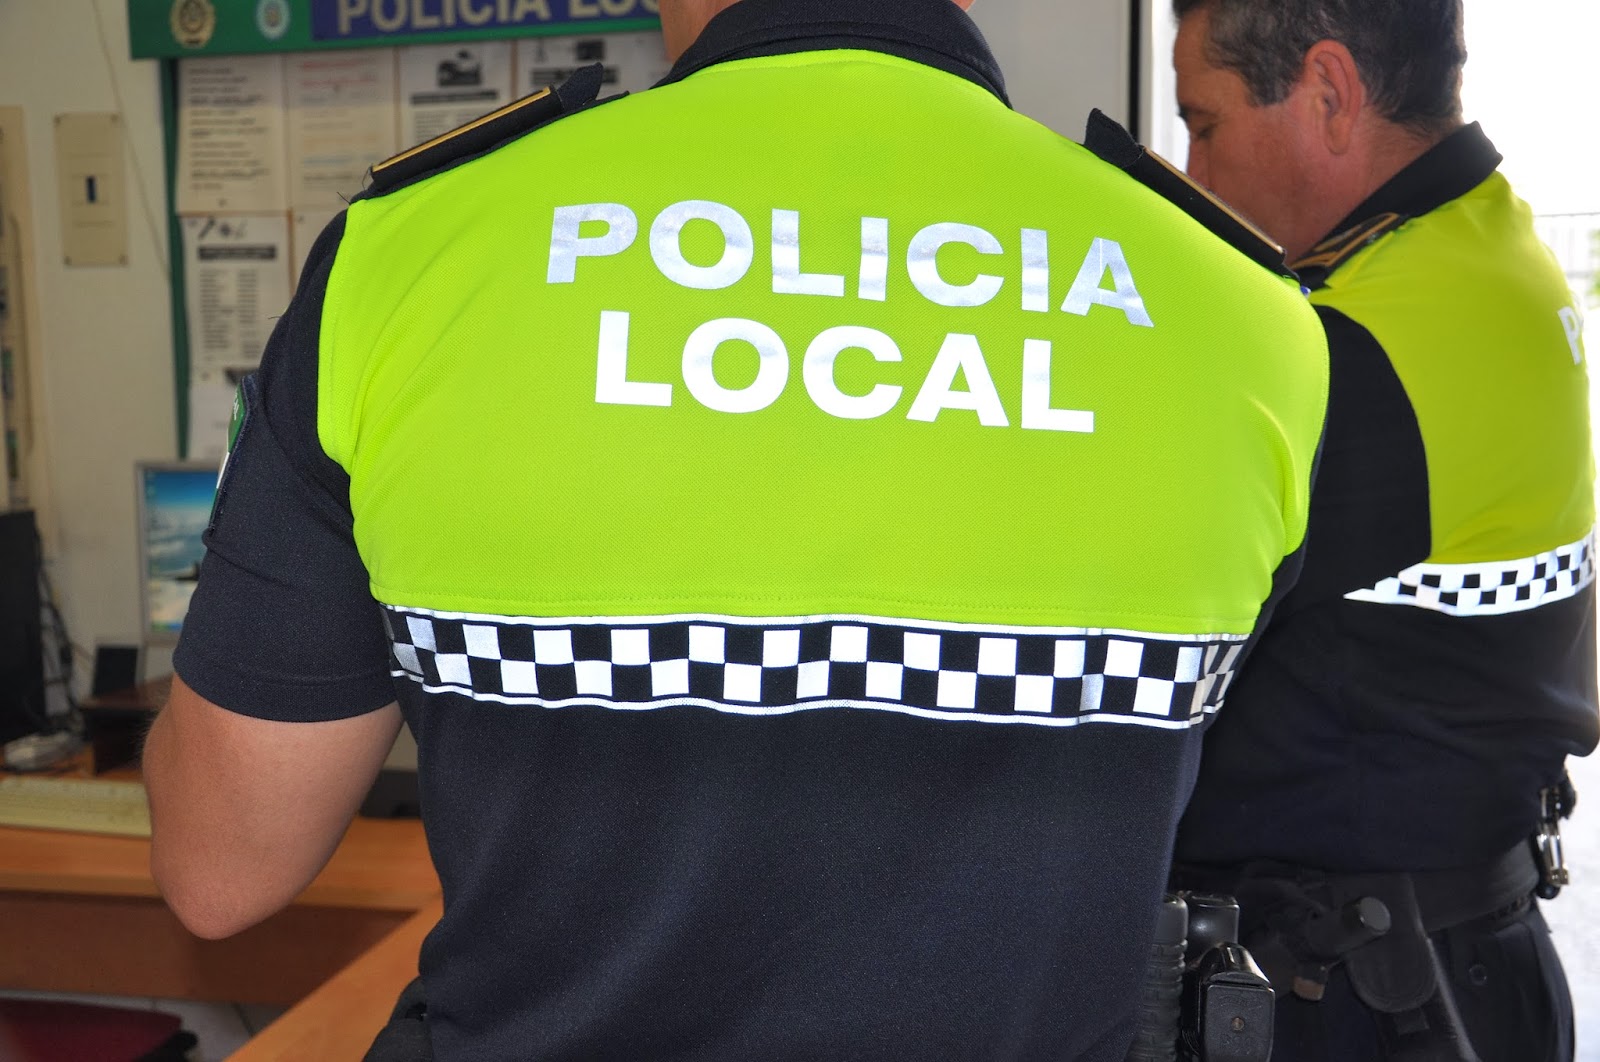 Policia-local